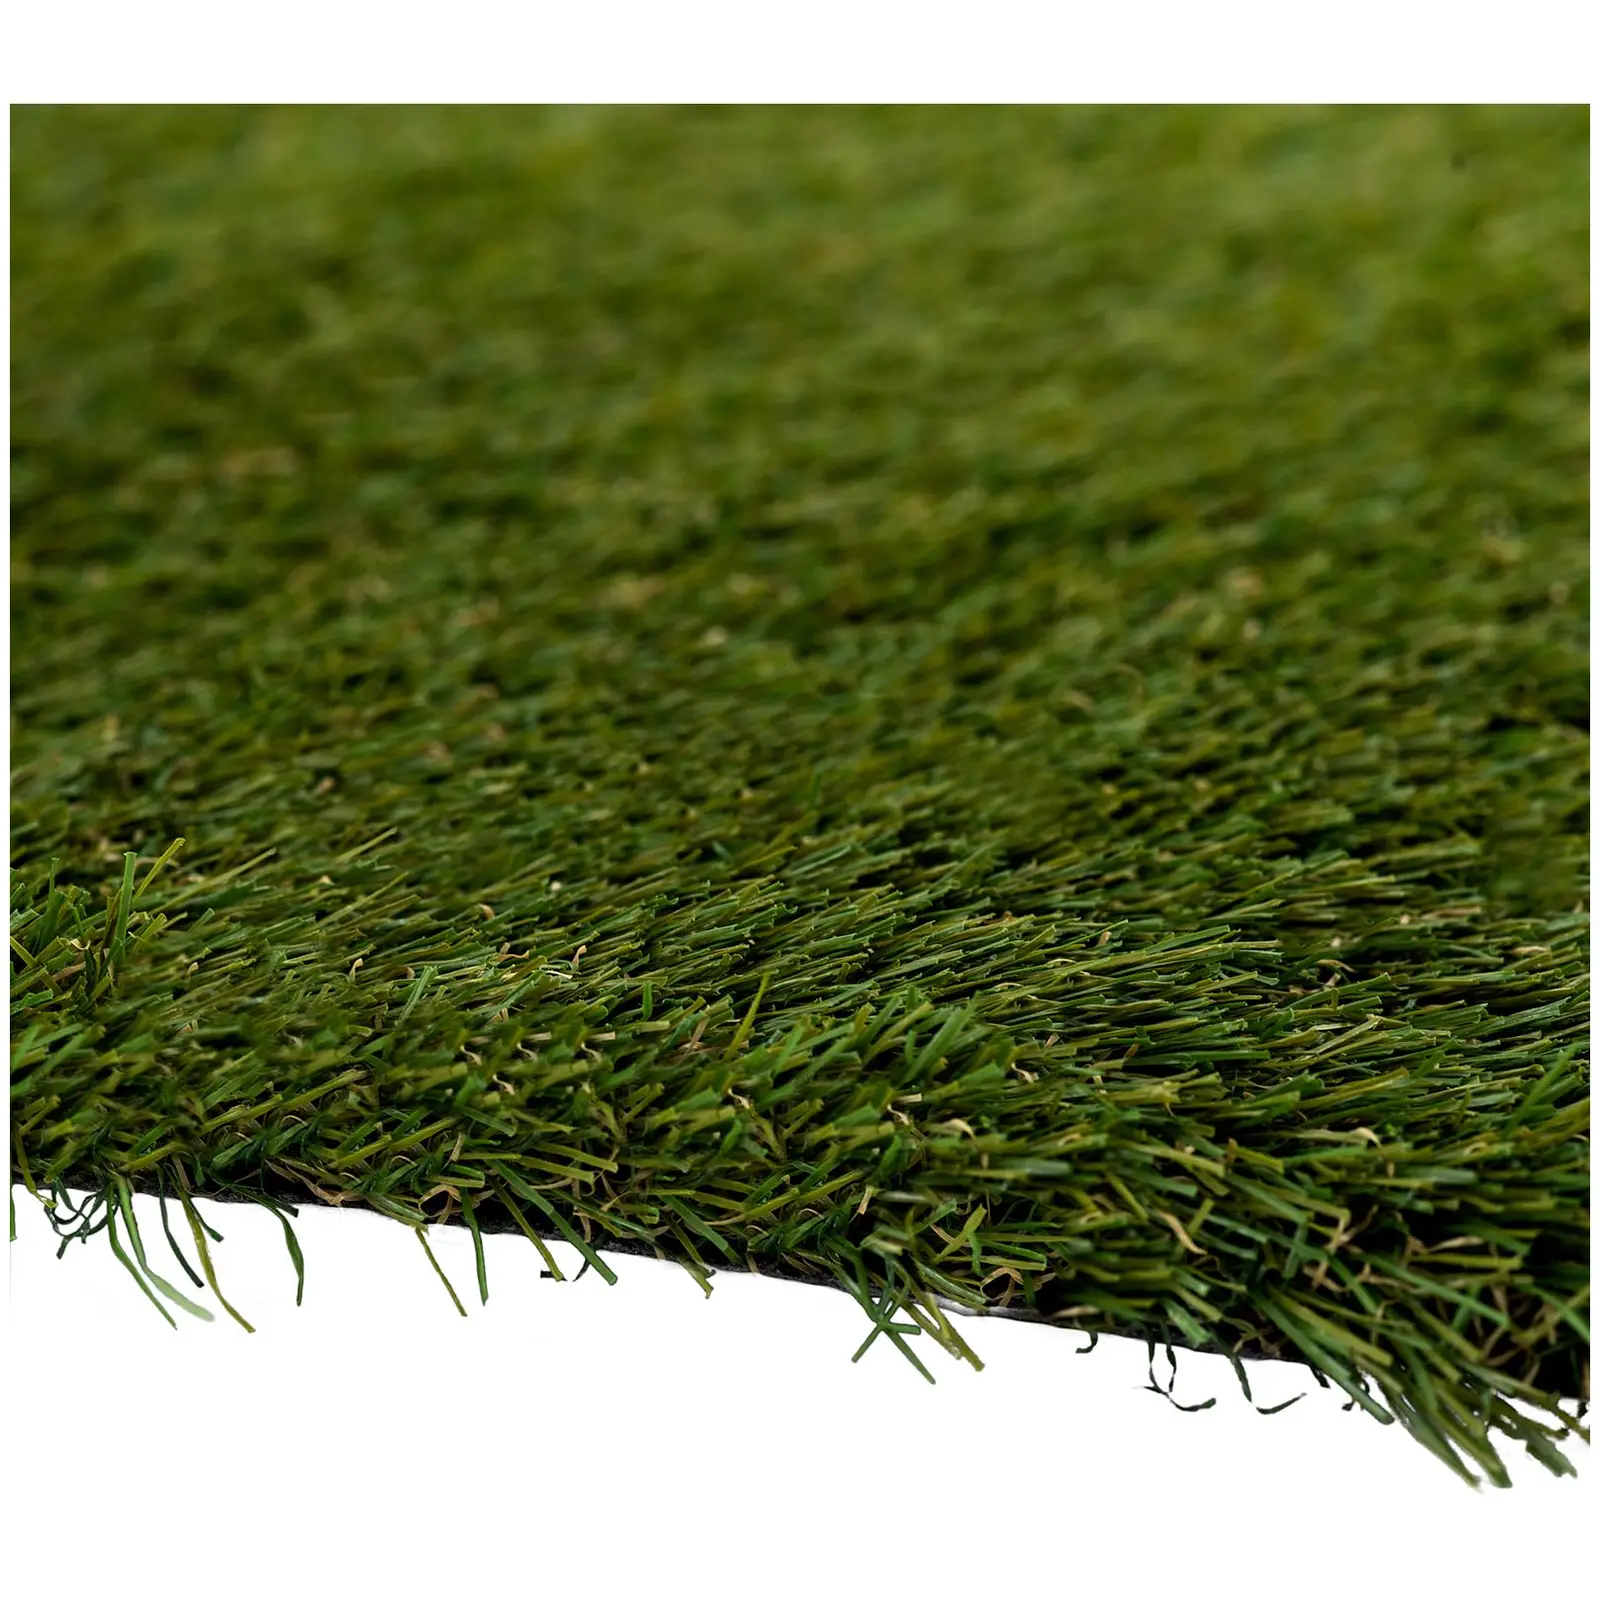 Umelý trávnik - 1036 x 200 cm - výška: 30 mm - hustota stehu: 20/10 cm - odolný proti UV žiareniu